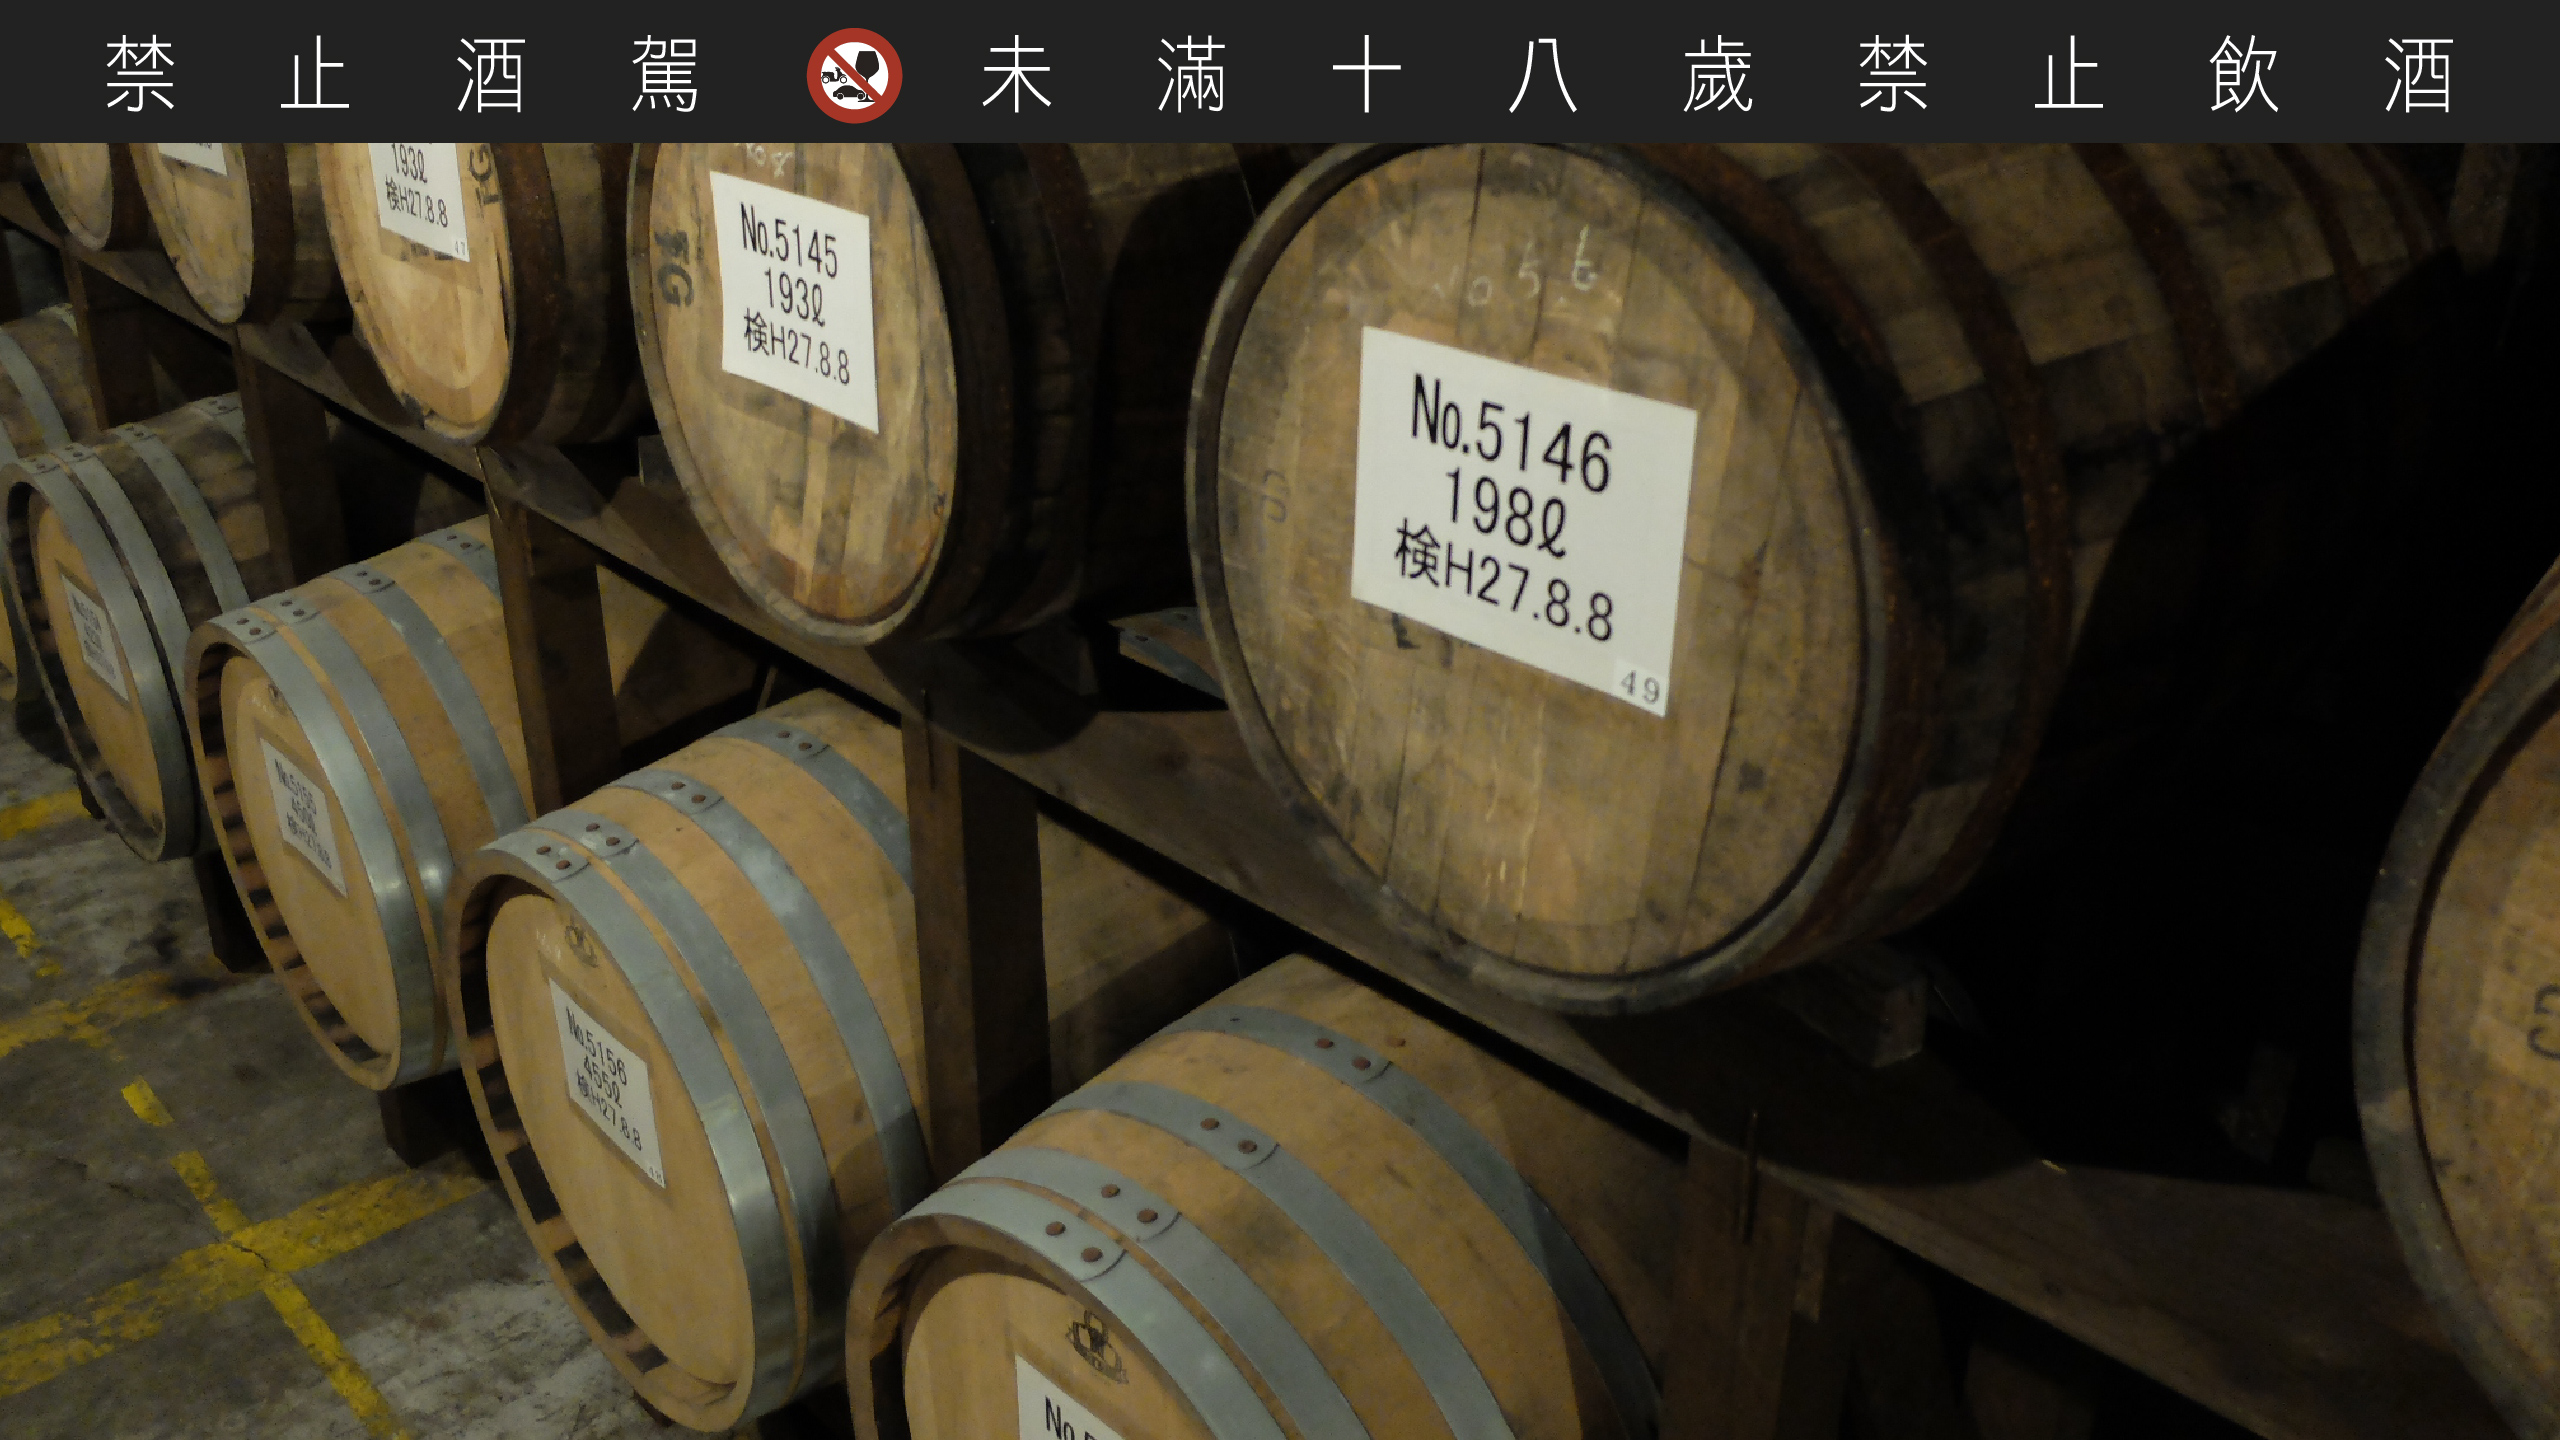 津貫蒸餾廠酒窖在 2016 年開始啟動，窖藏新酒與珍貴老酒。